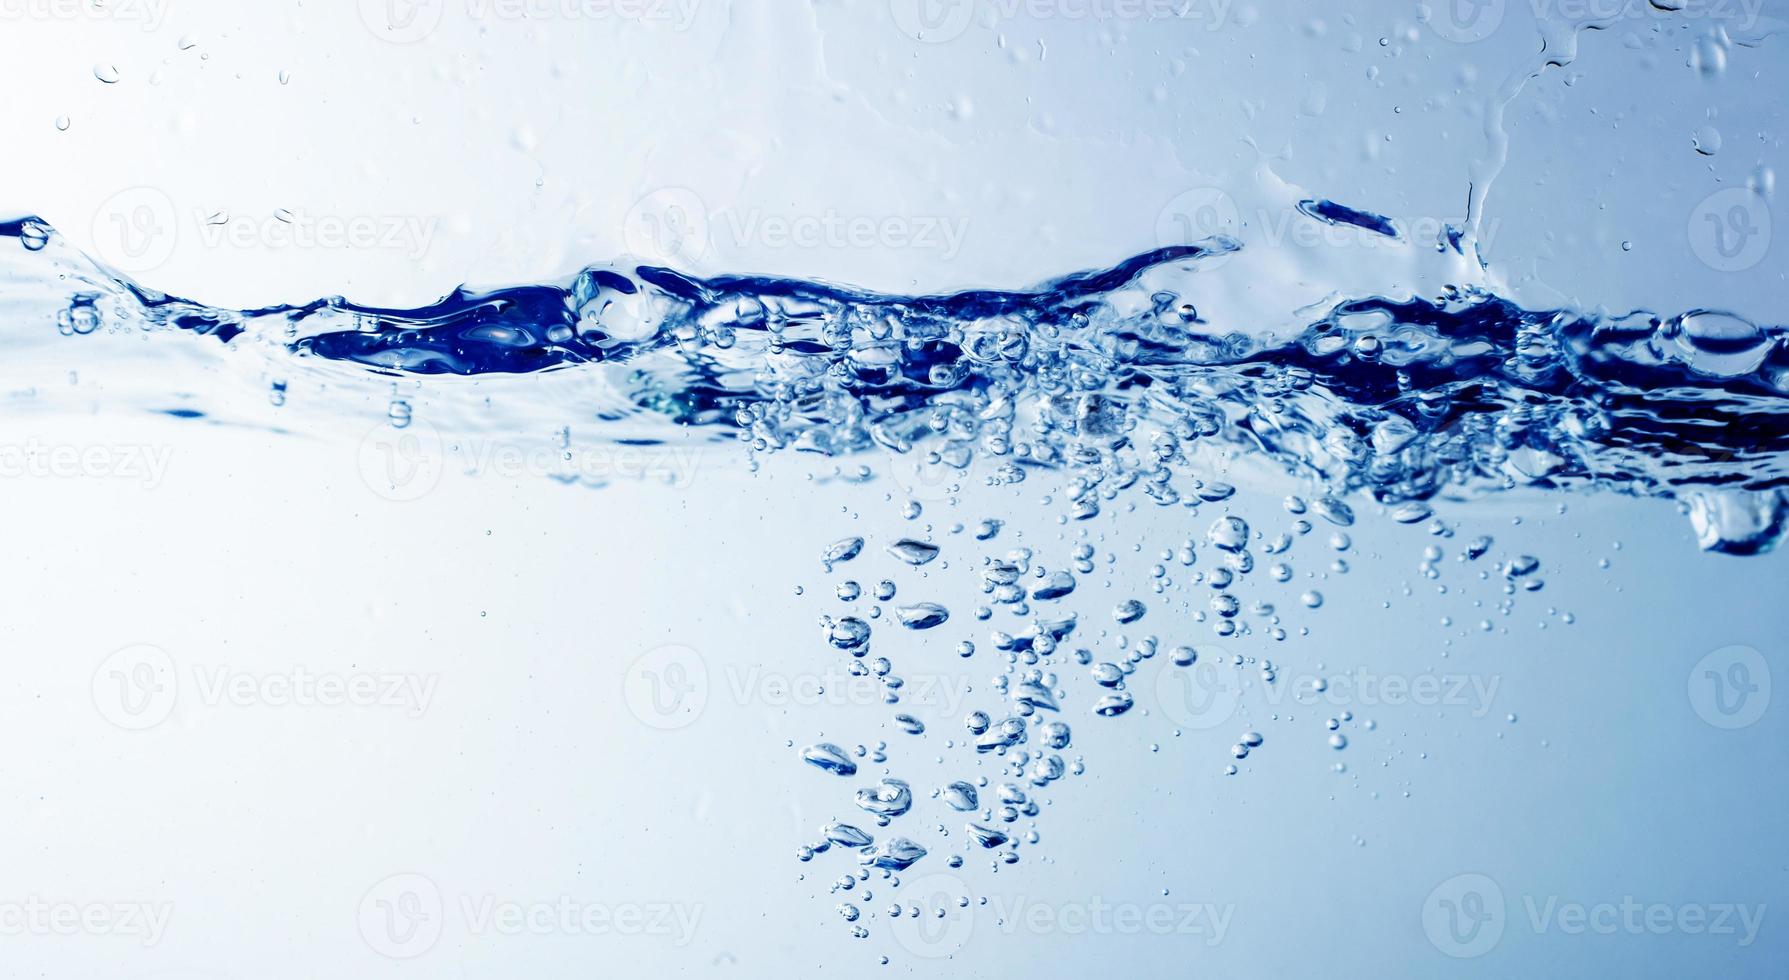 eau et bulles sur le fond bleu de l'eau photo